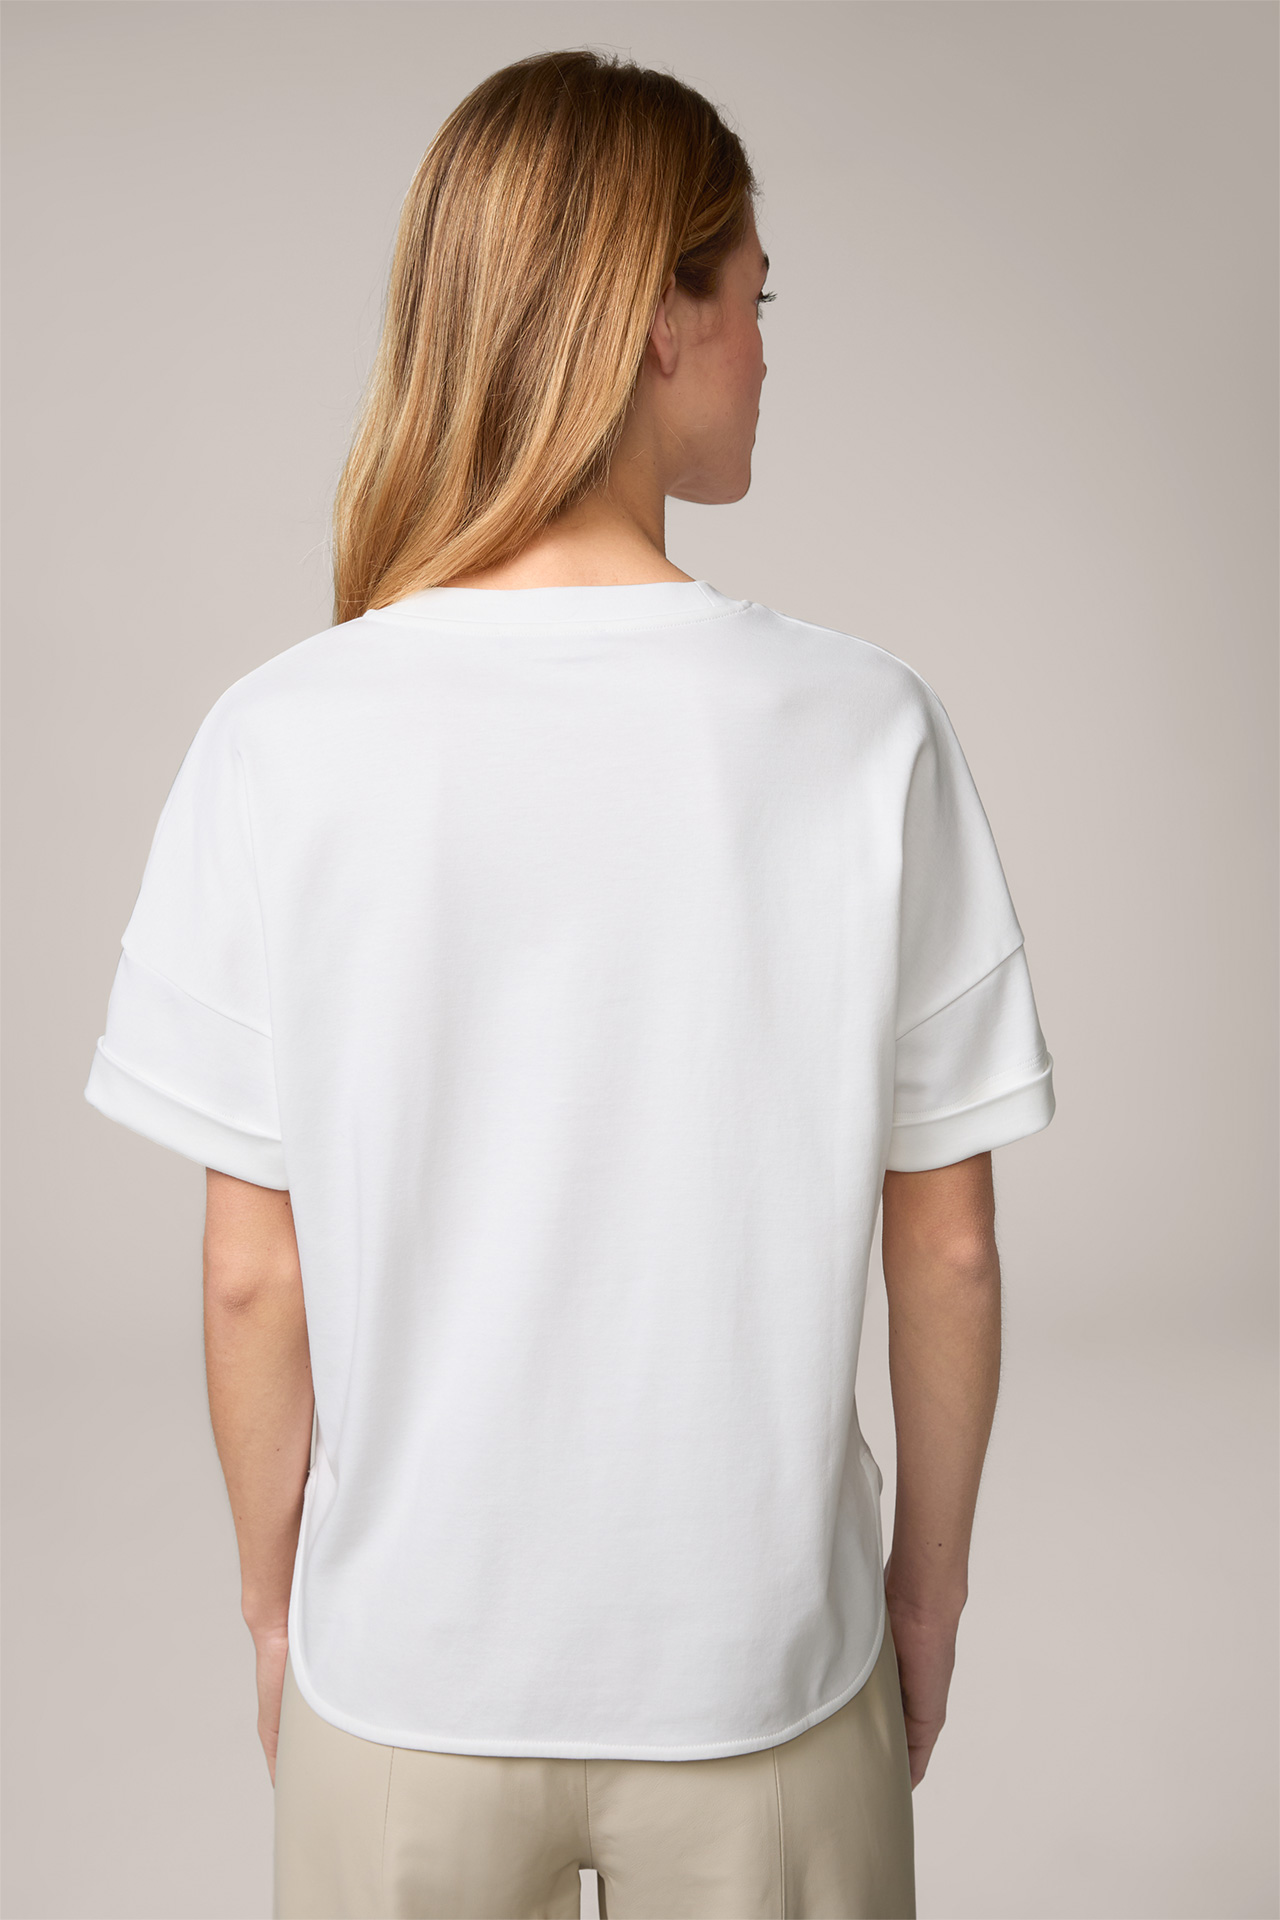  Cotton Interlock Half-Sleeve Shirt in White